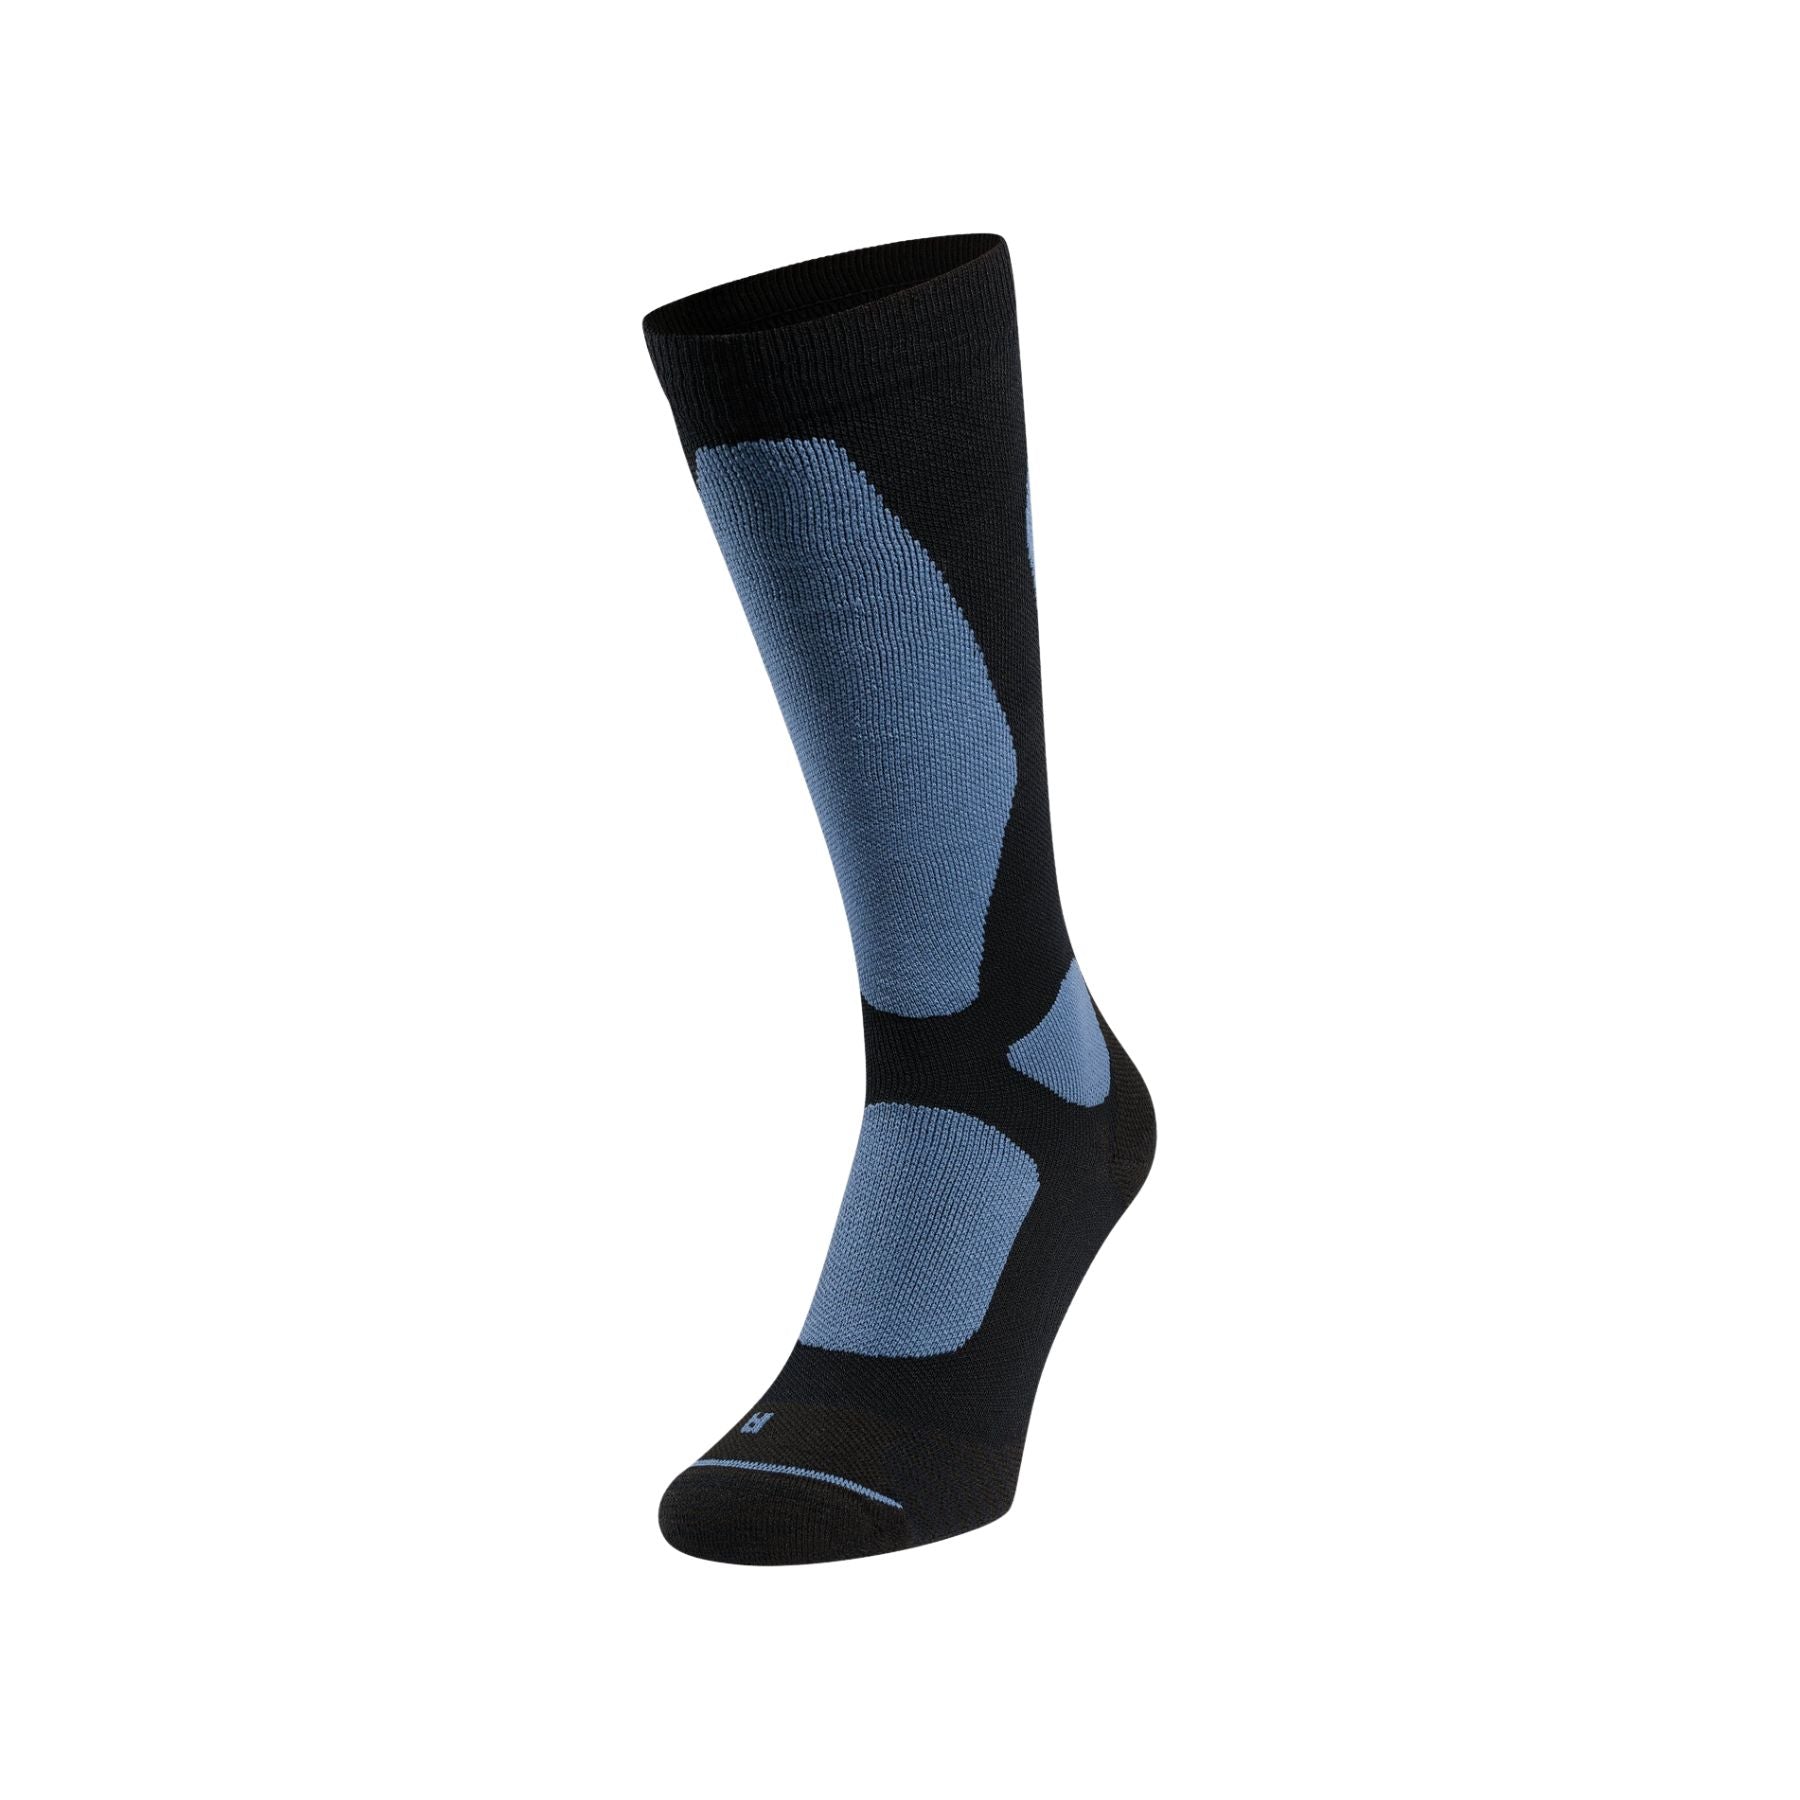 Odlo Primaloft® Pro socks in Black/Folkstone Gray